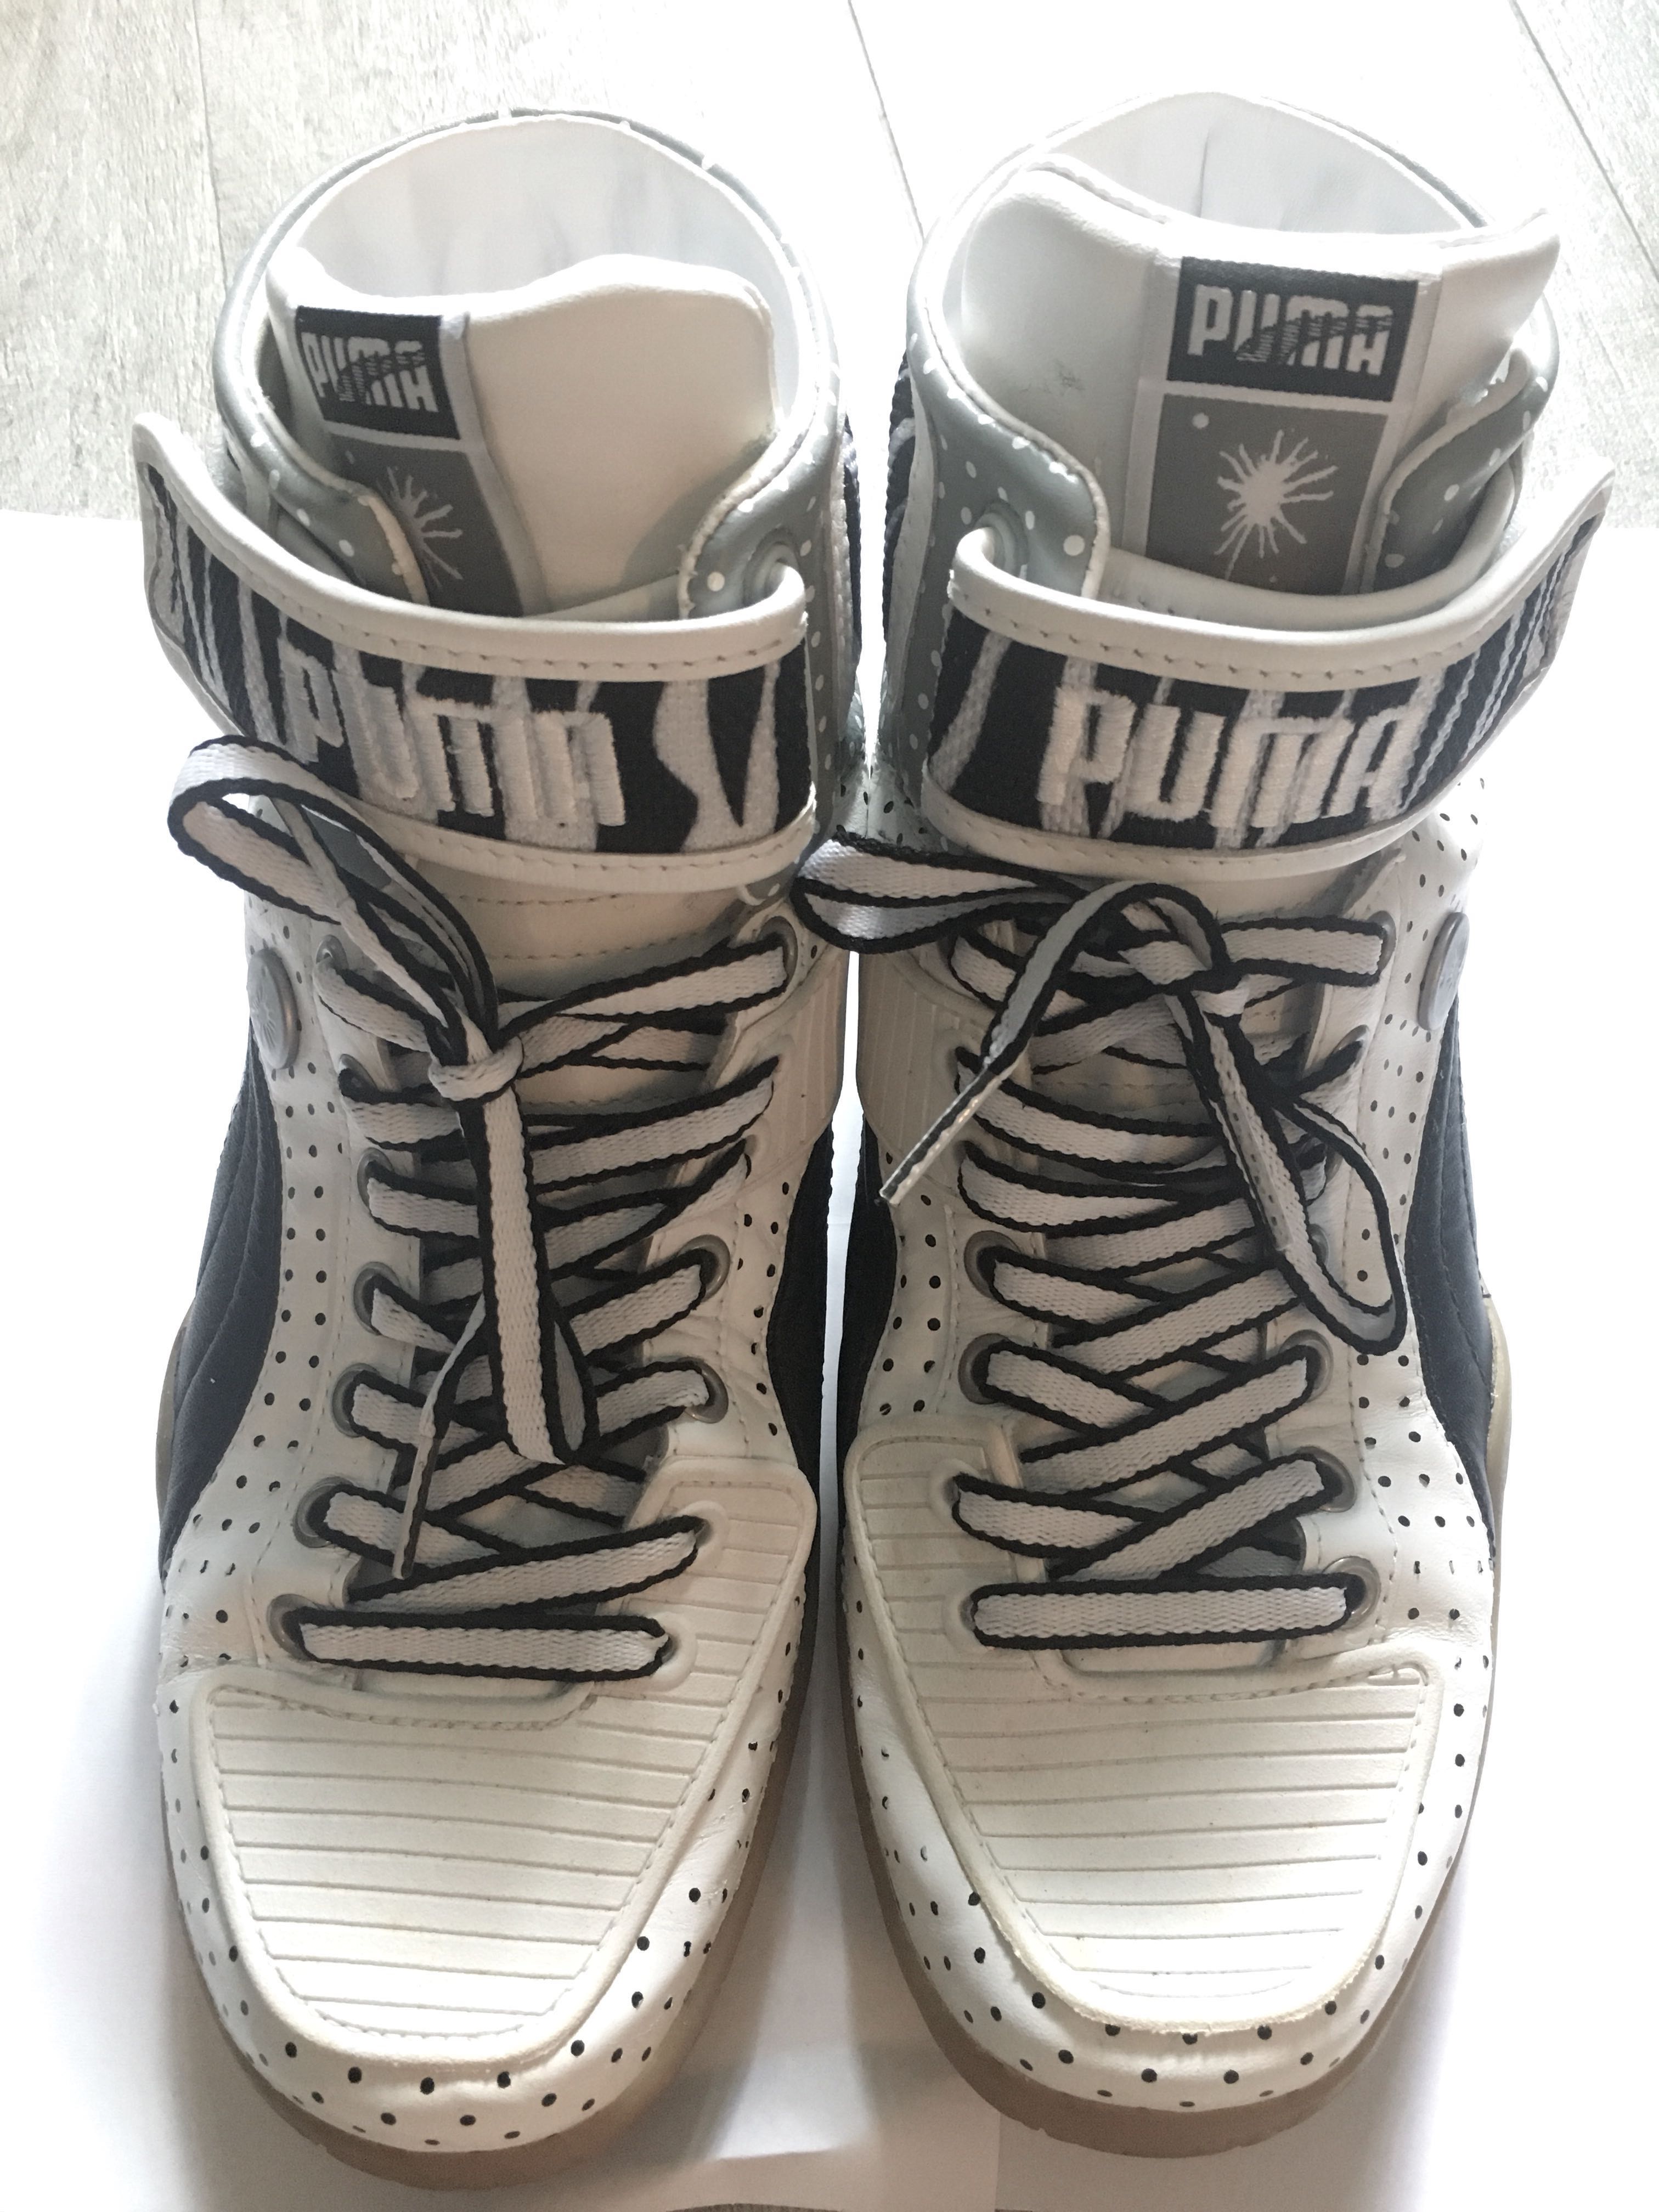 puma stylish sneakers